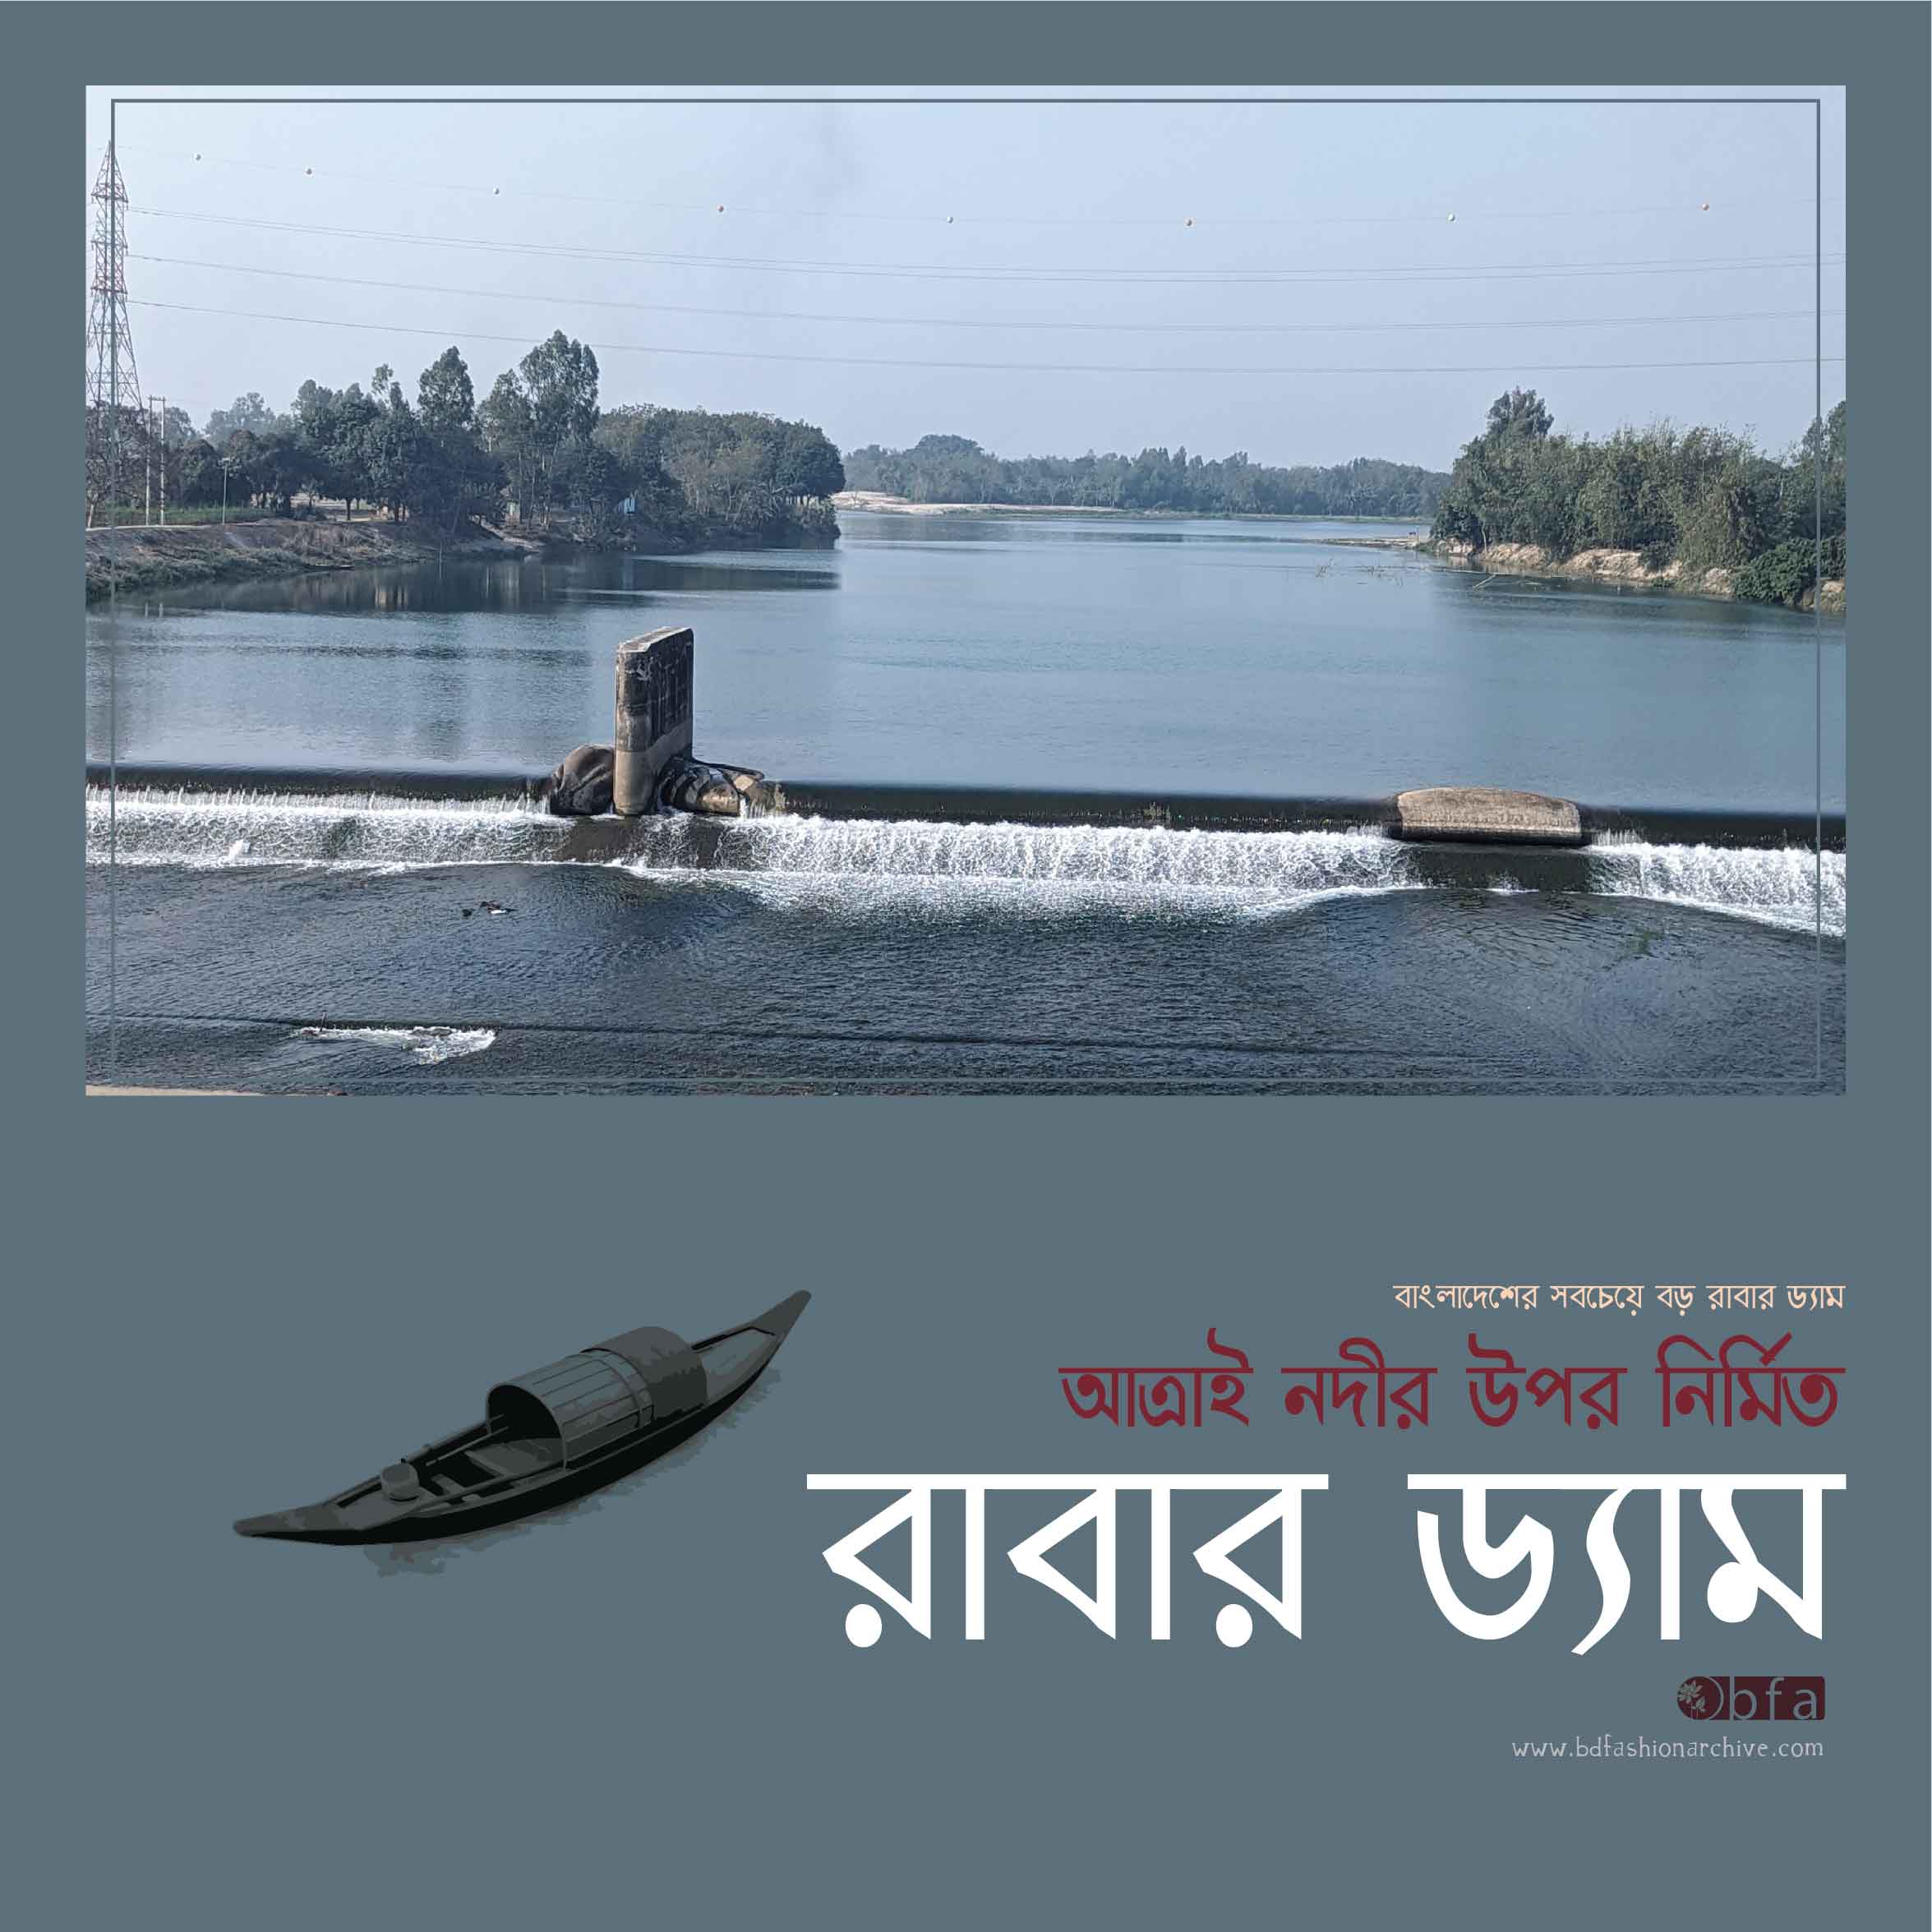 দিনাজপুরের রাবার ড্যাম rubber dam in Bangladesh x bfa x fxyz